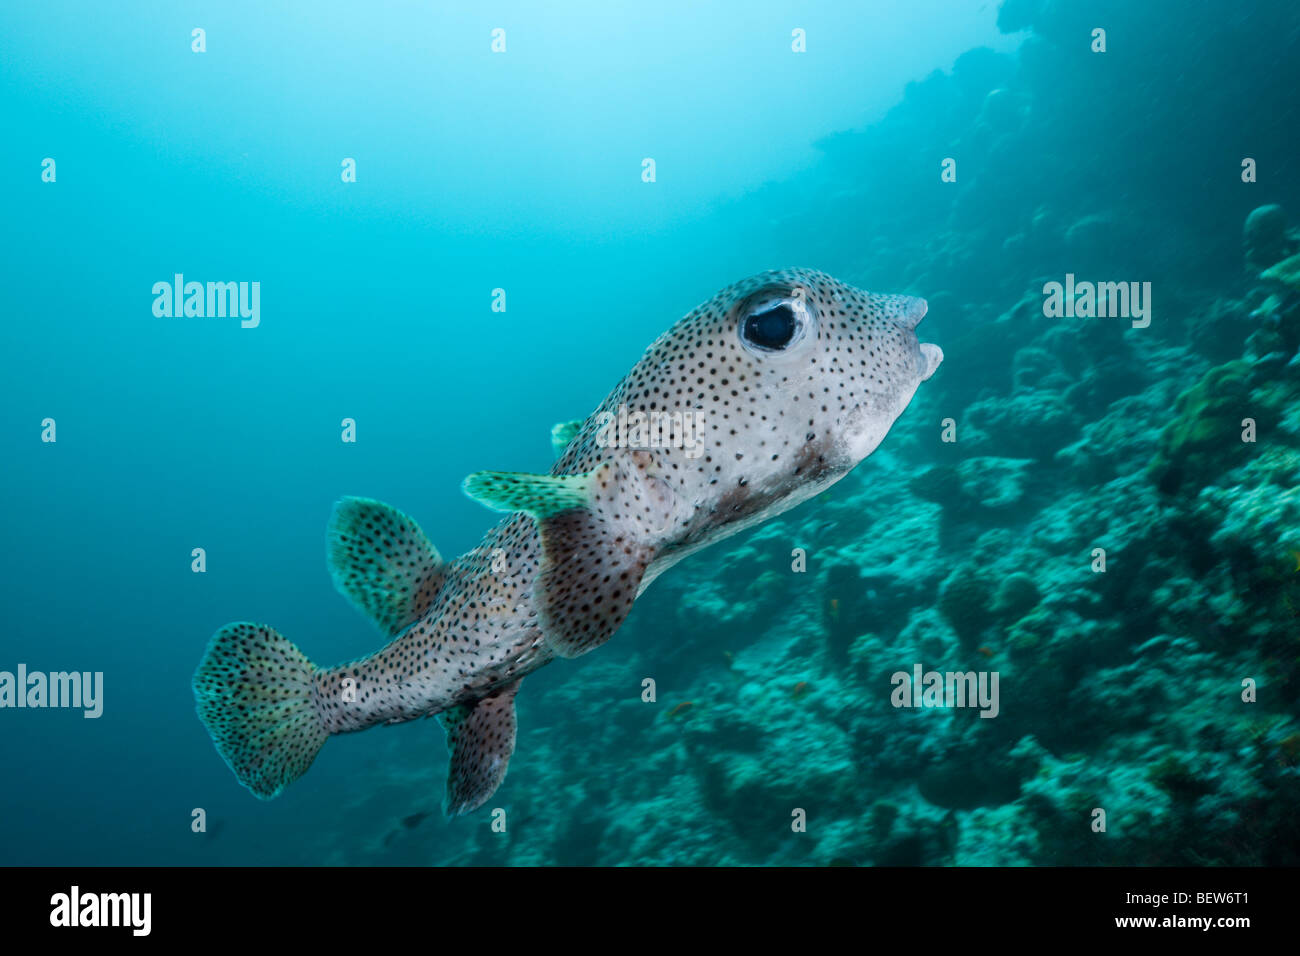 Common Porcupinefish, Diodon hystrix, Medhu Faru Reef, South Male Atoll, Maldives Stock Photo